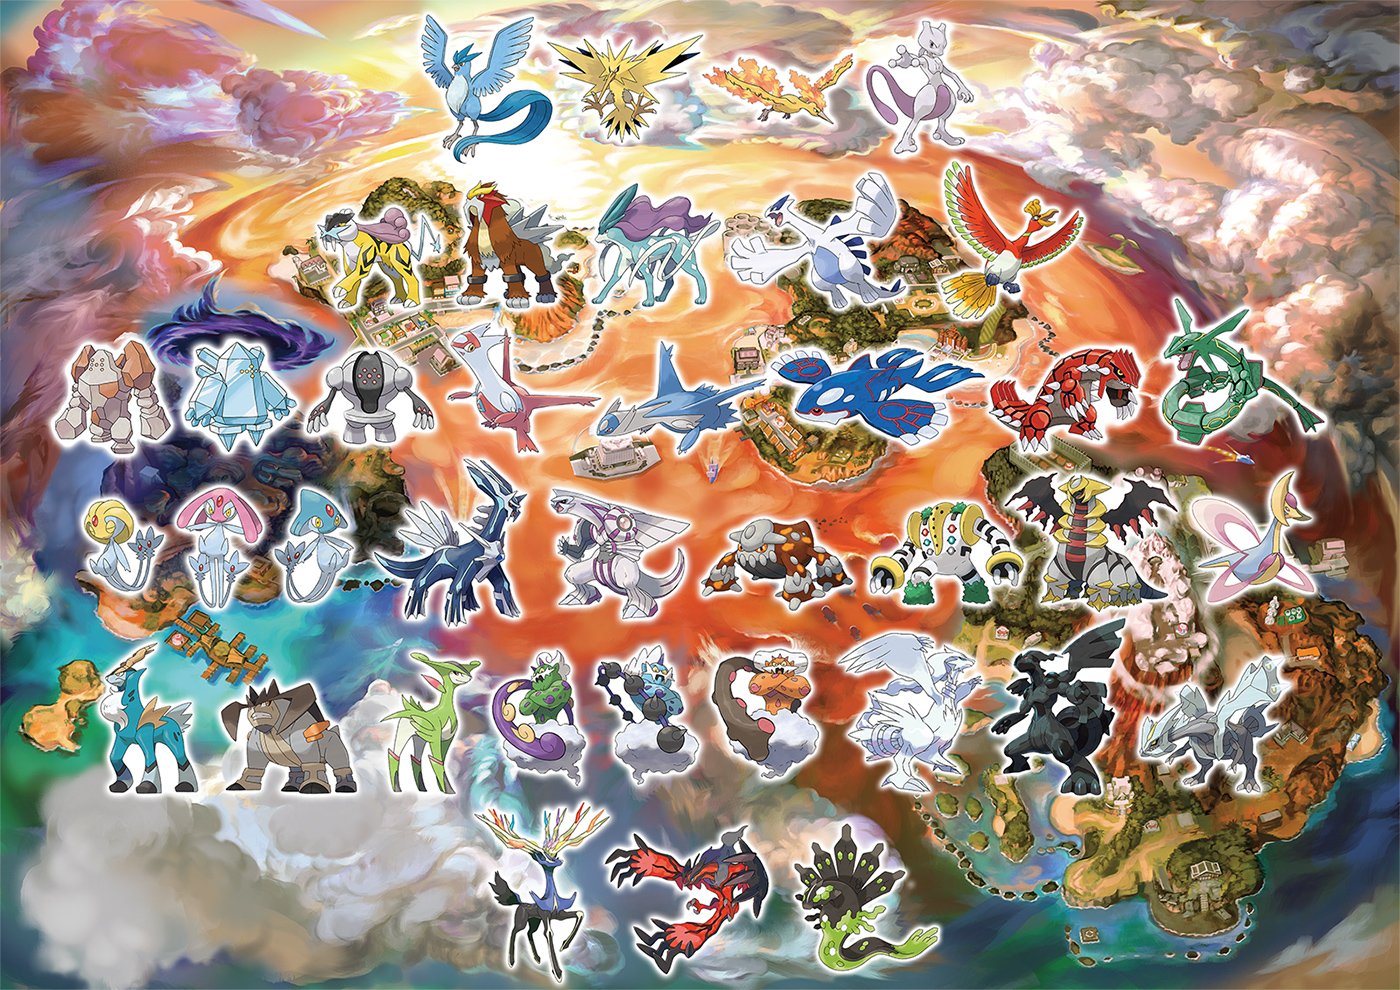 Pixelmon Legendaries, Legendary Pokémon